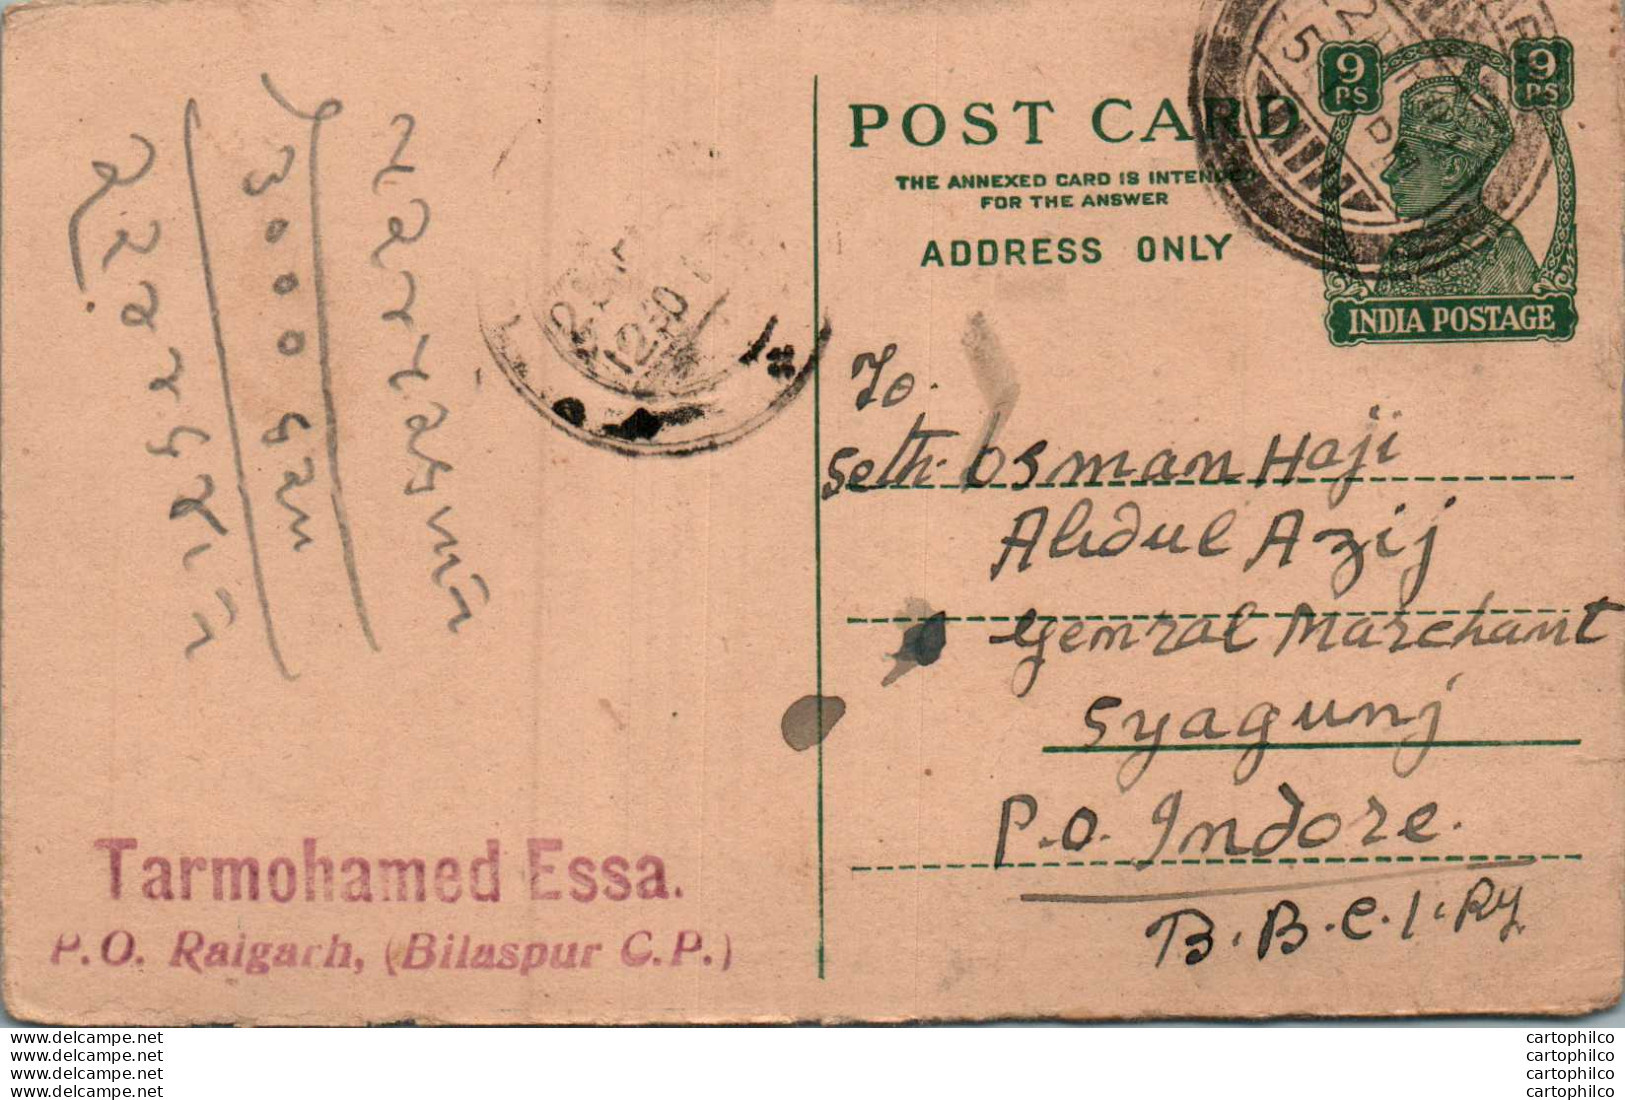 India Postal Stationery George VI 9p Tarmohamed Essa Raigarh Bilaspur - Postkaarten